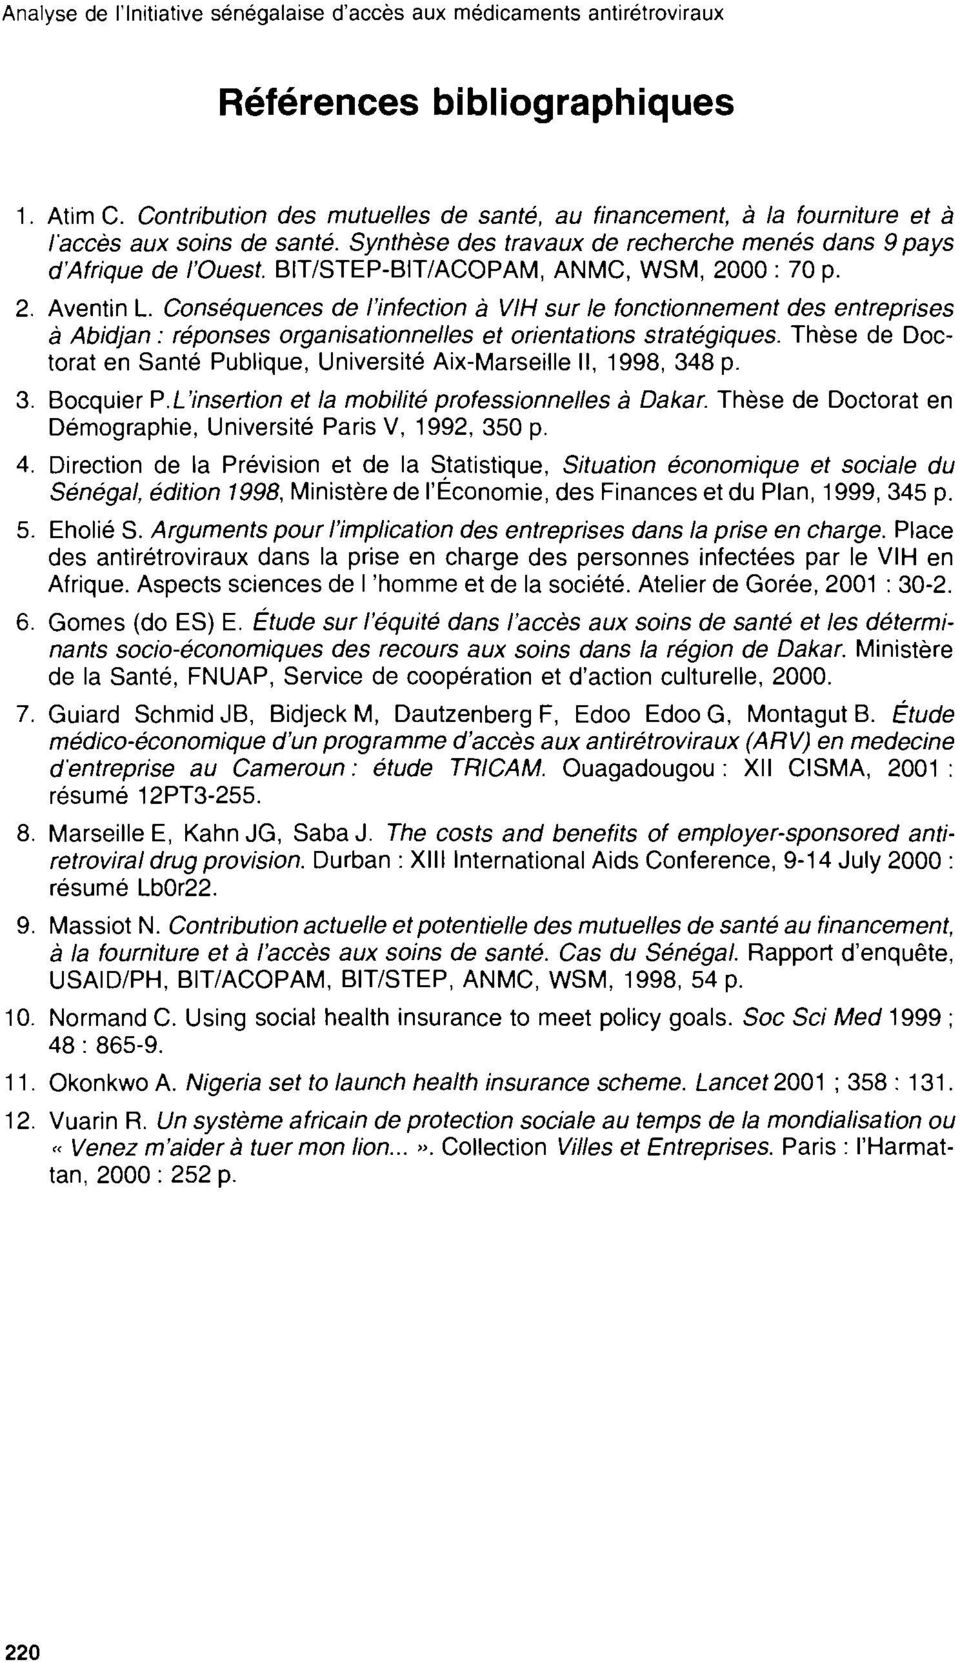 BIT/STEP-BIT/ACOPAM, ANMC, WSM, 2000 : 70 p. 2. Aventin L. Conséquences de l'infection à VIH sur le fonctionnement des entreprises à Abidjan: réponses organisationnelles et orientations stratégiques.